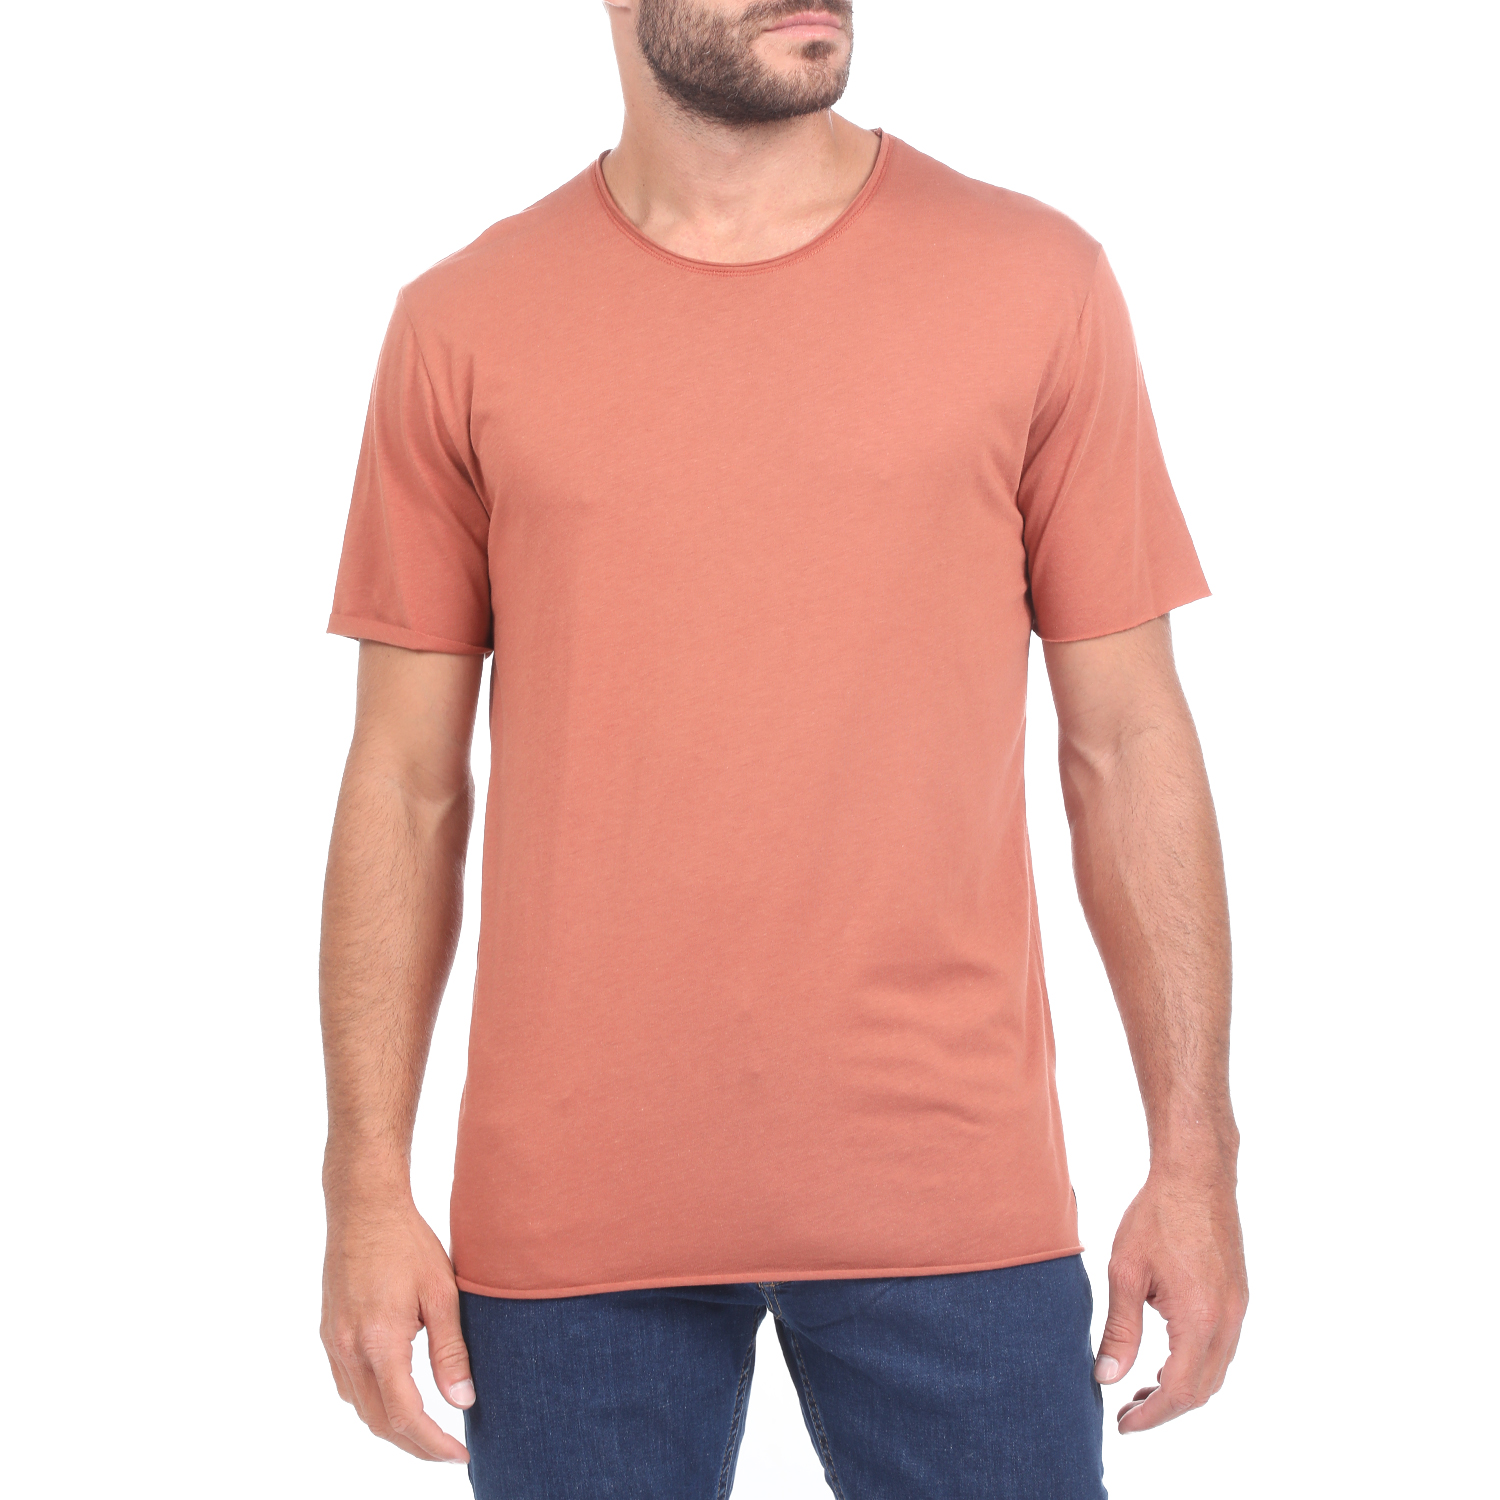 Ανδρικά/Ρούχα/Μπλούζες/Κοντομάνικες DIRTY LAUNDRY - Ανδρικό t-shirt DIRTY LAUNDRY ESSENTIAL MODAL κεραμιδί